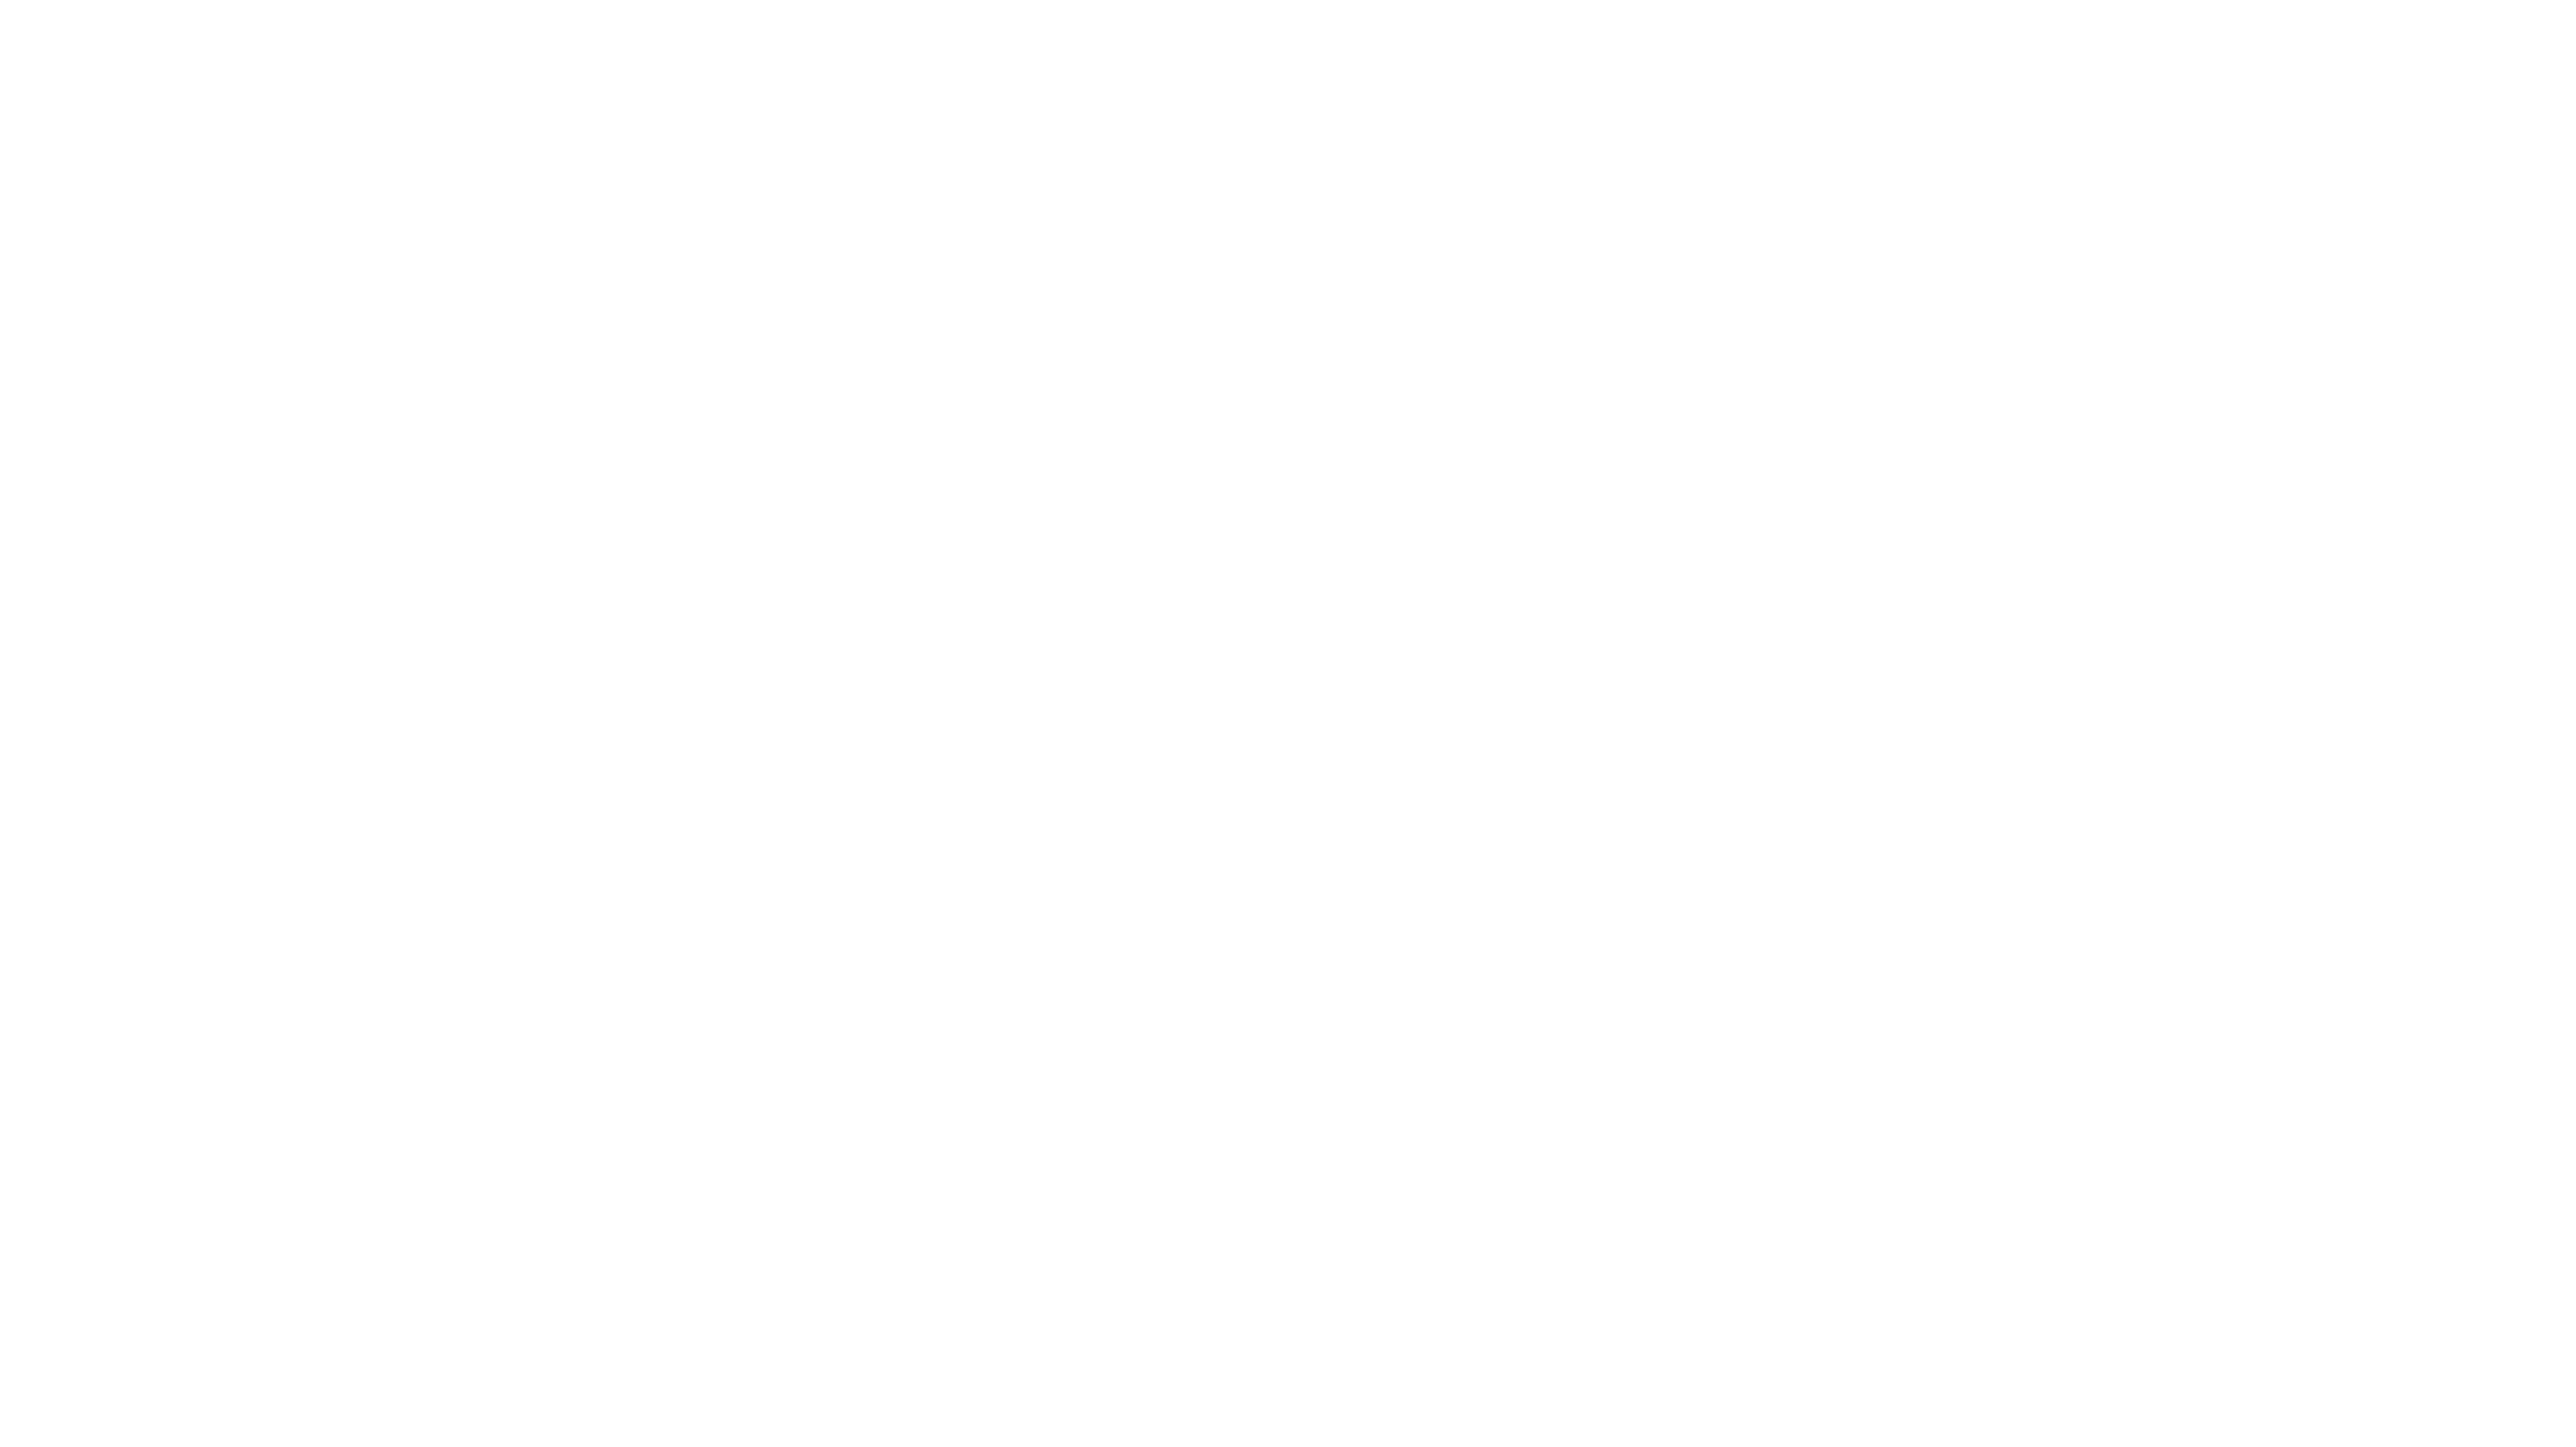 Boys & Girls Club of San Marcos